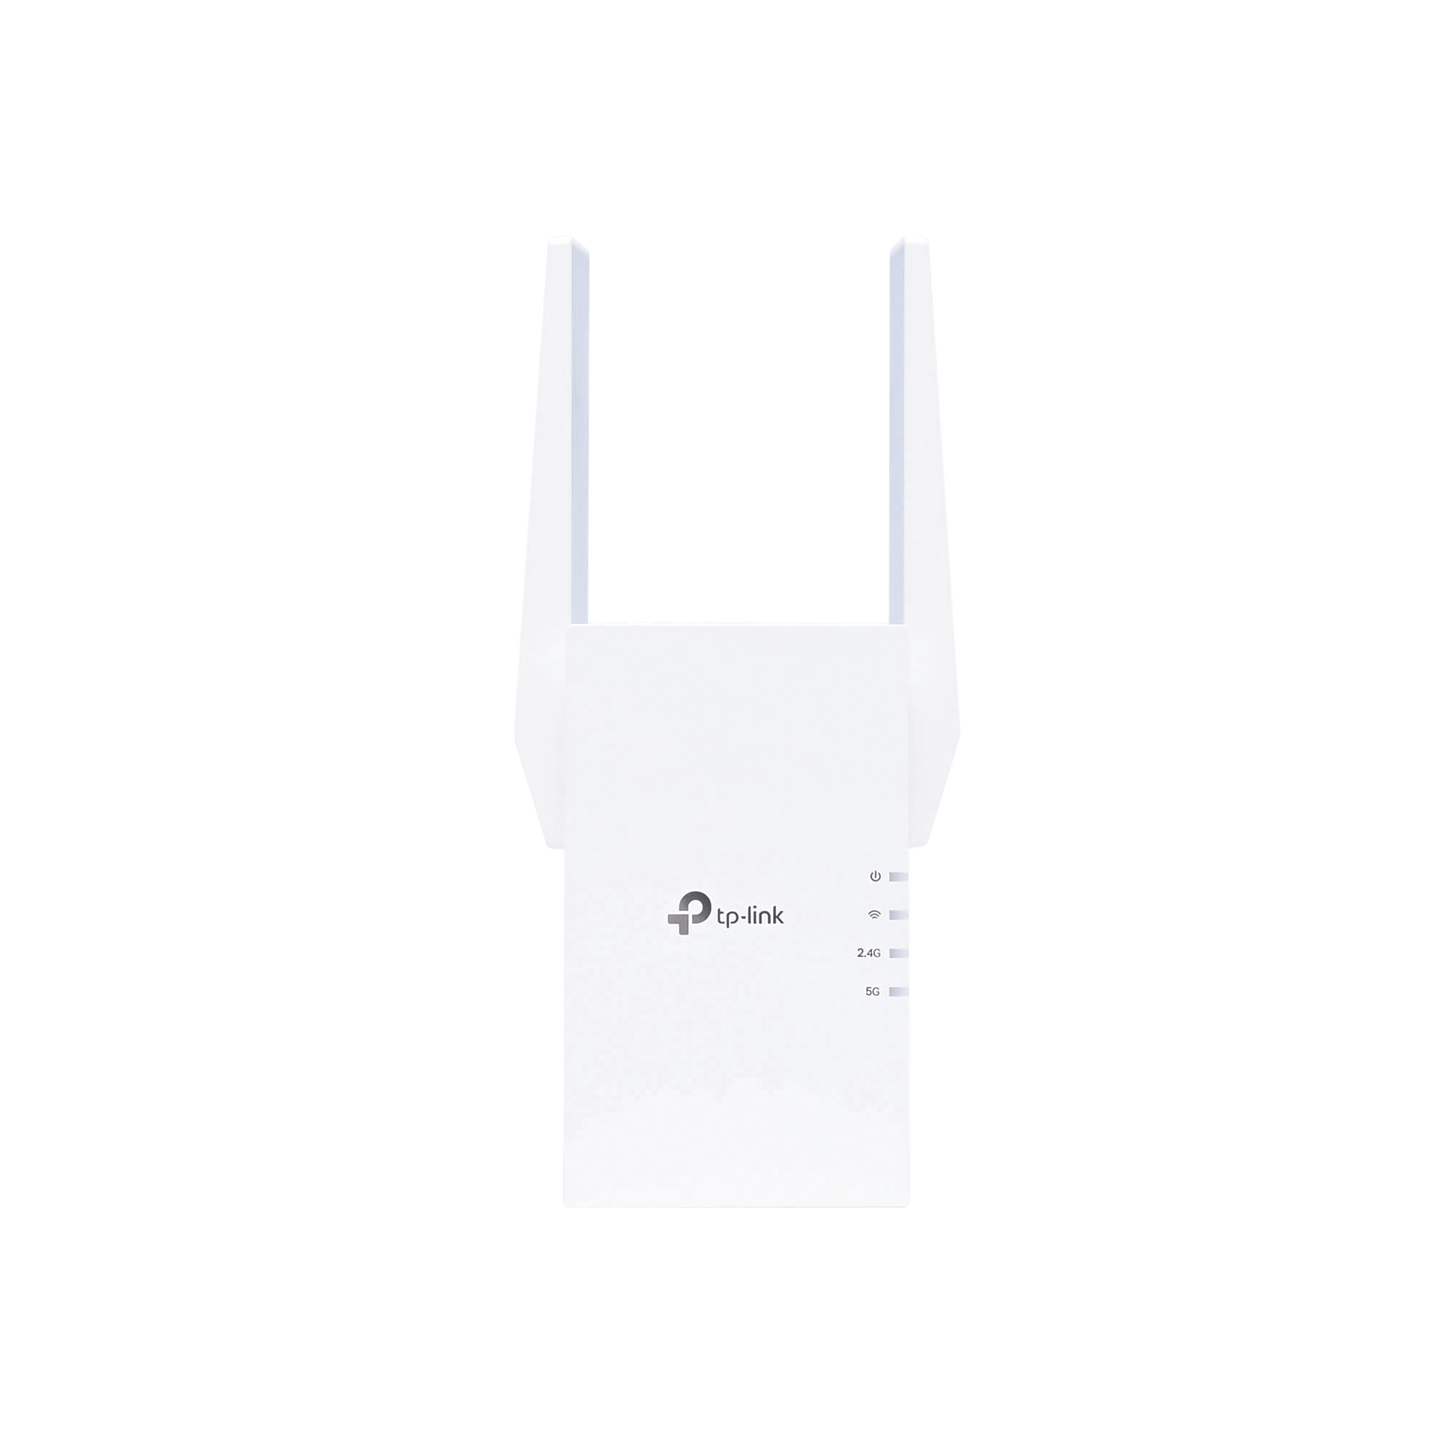 Repetidor / Extensor de Cobertura WiFi AX 1500 Mbps, doble banda 2.4 GHz y 5 GHz, con 1 puerto 10/100/1000 Mbps